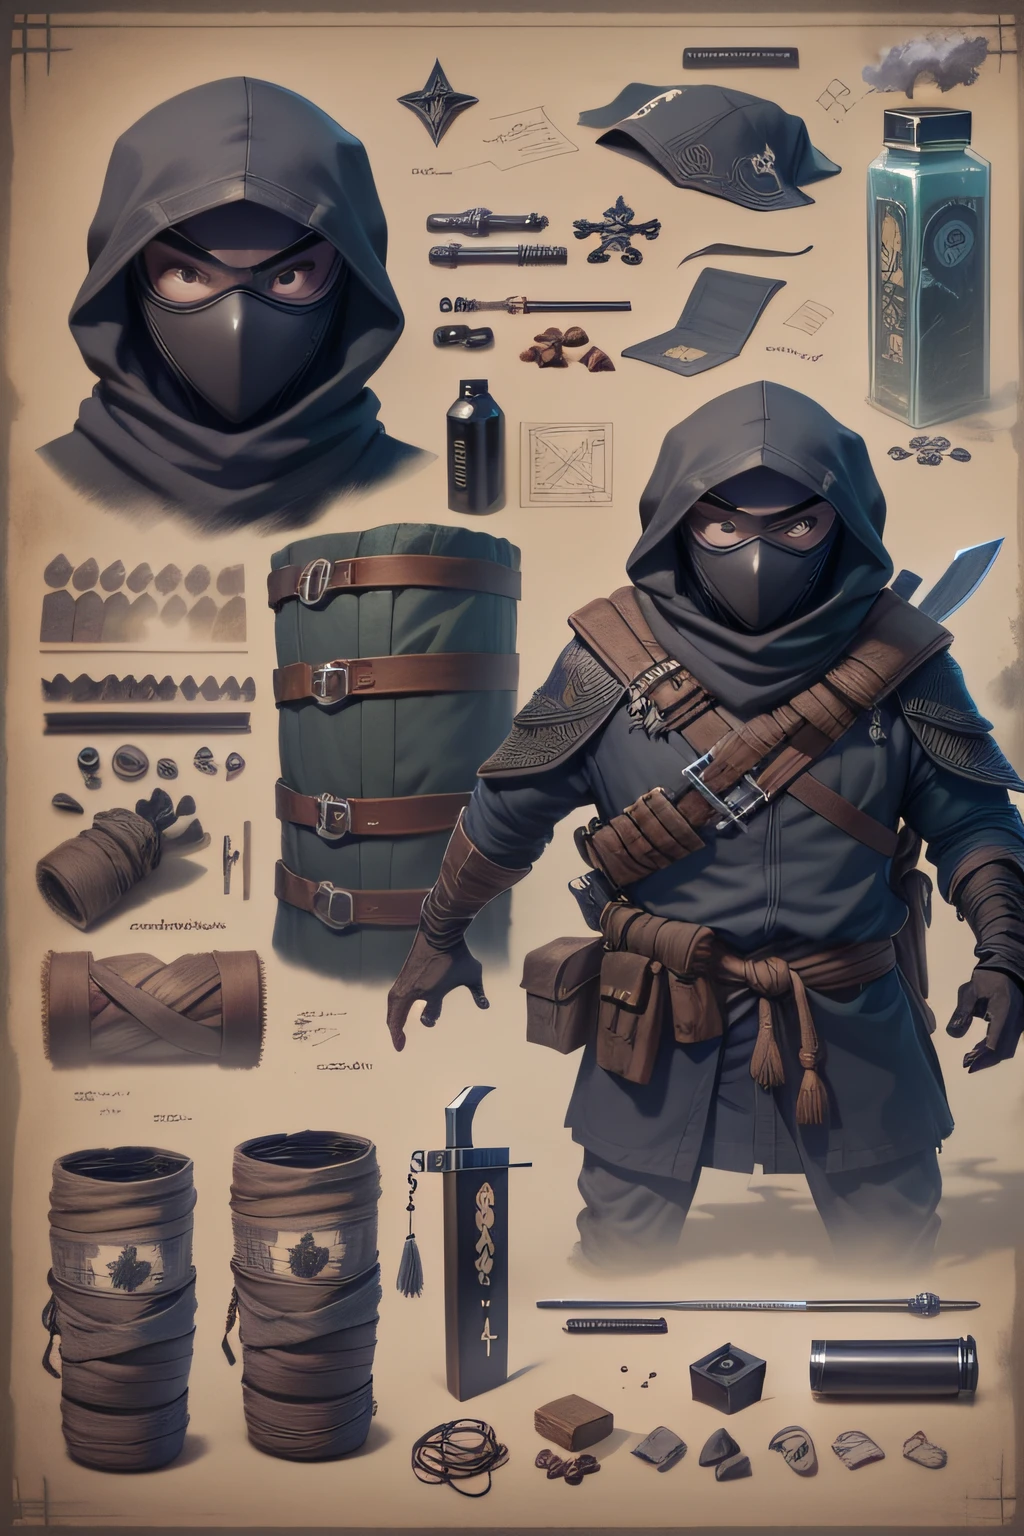 Um ninja sorrateiro se esconde nas sombras pronto para emboscar inimigos. 

itens e equipamentos listados ao lado:
- Máscara preta e vestuário
- Shurikens de aço 
- Espada ninja
- Bombas de fumaça